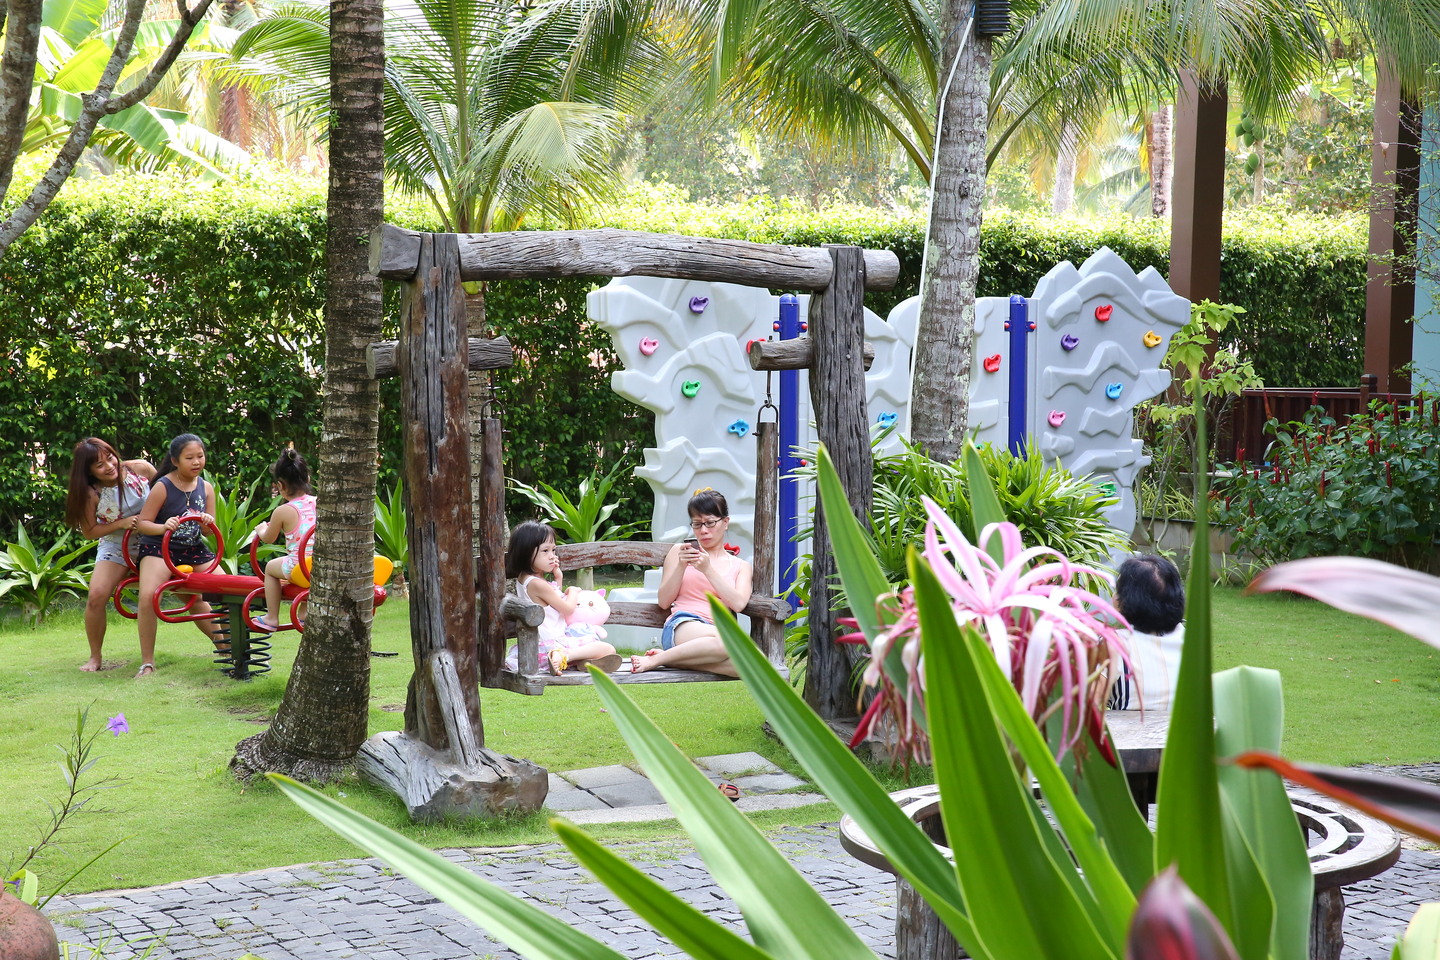 Tropicana Resort Phú Quốc - Ốc đảo xinh đẹp giữa lòng Đảo Ngọc 